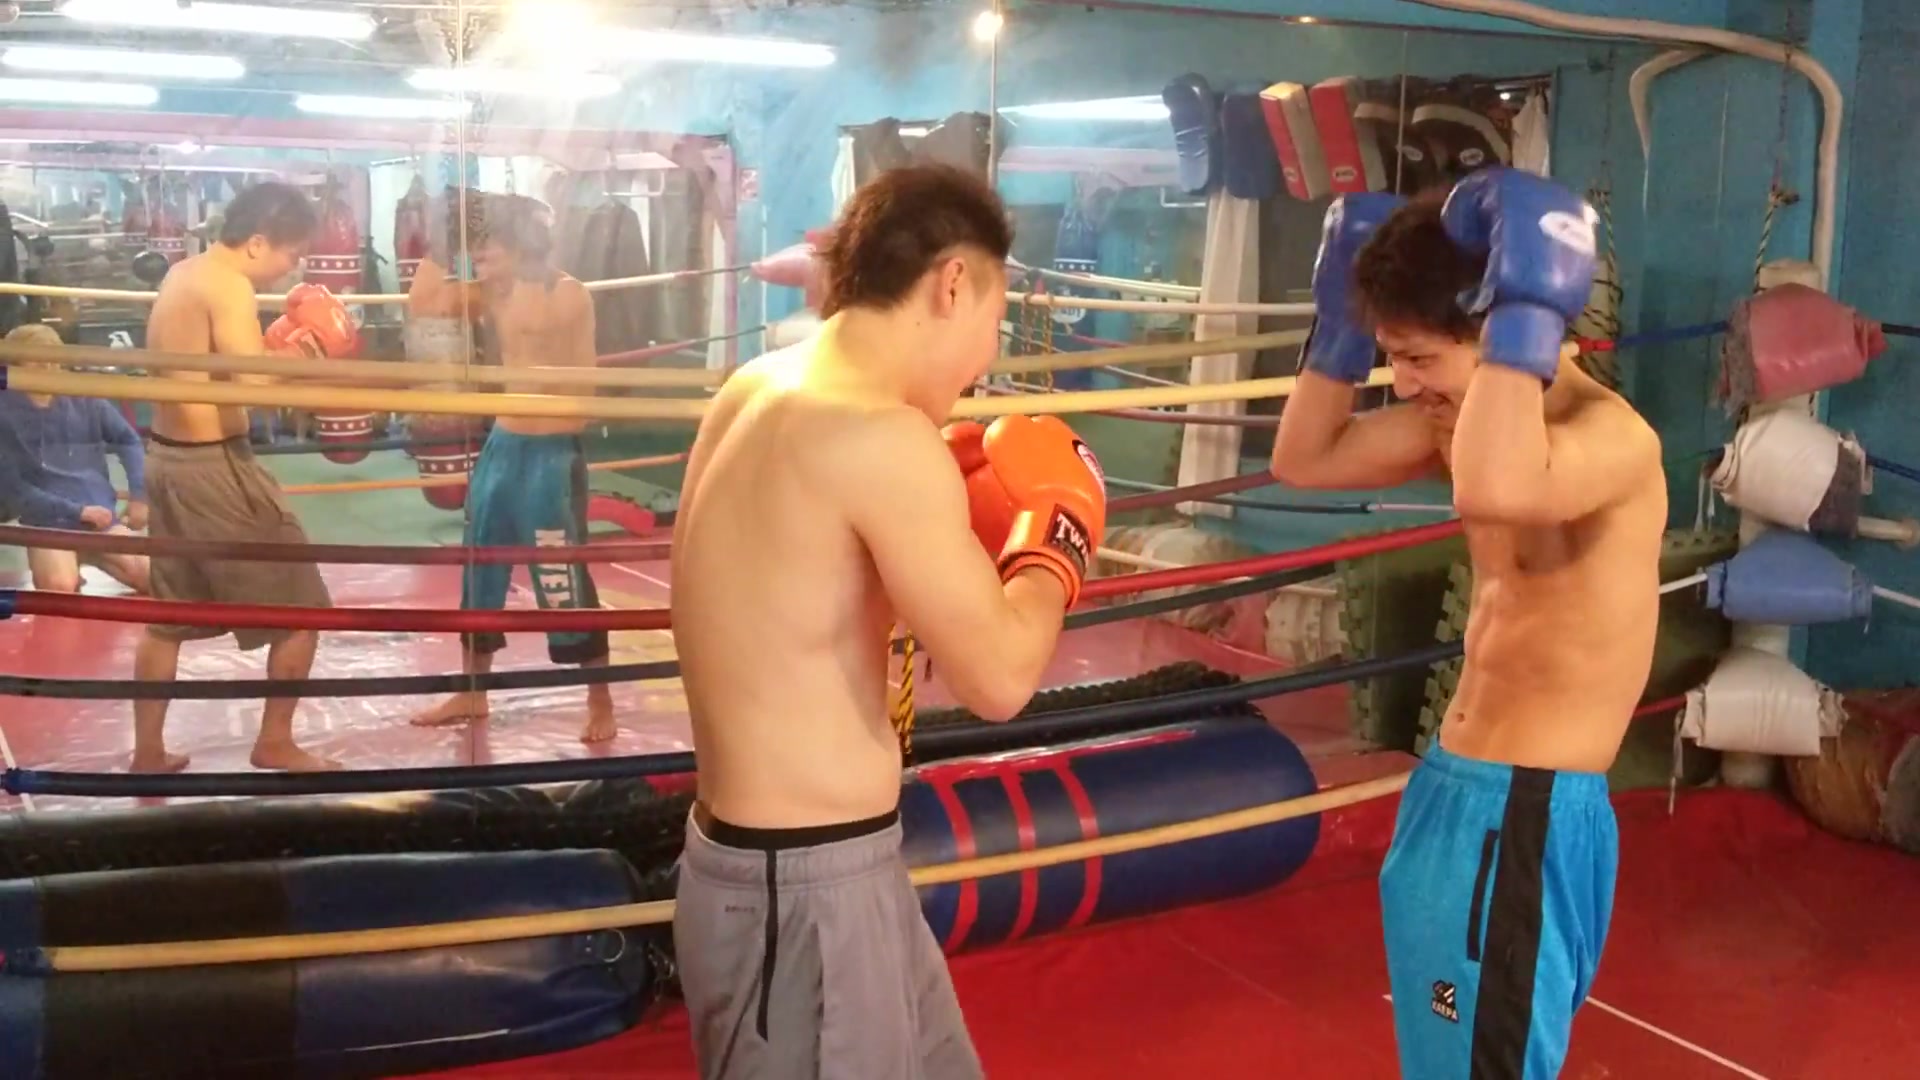 Asian Boxers Take Turns Gut Punching